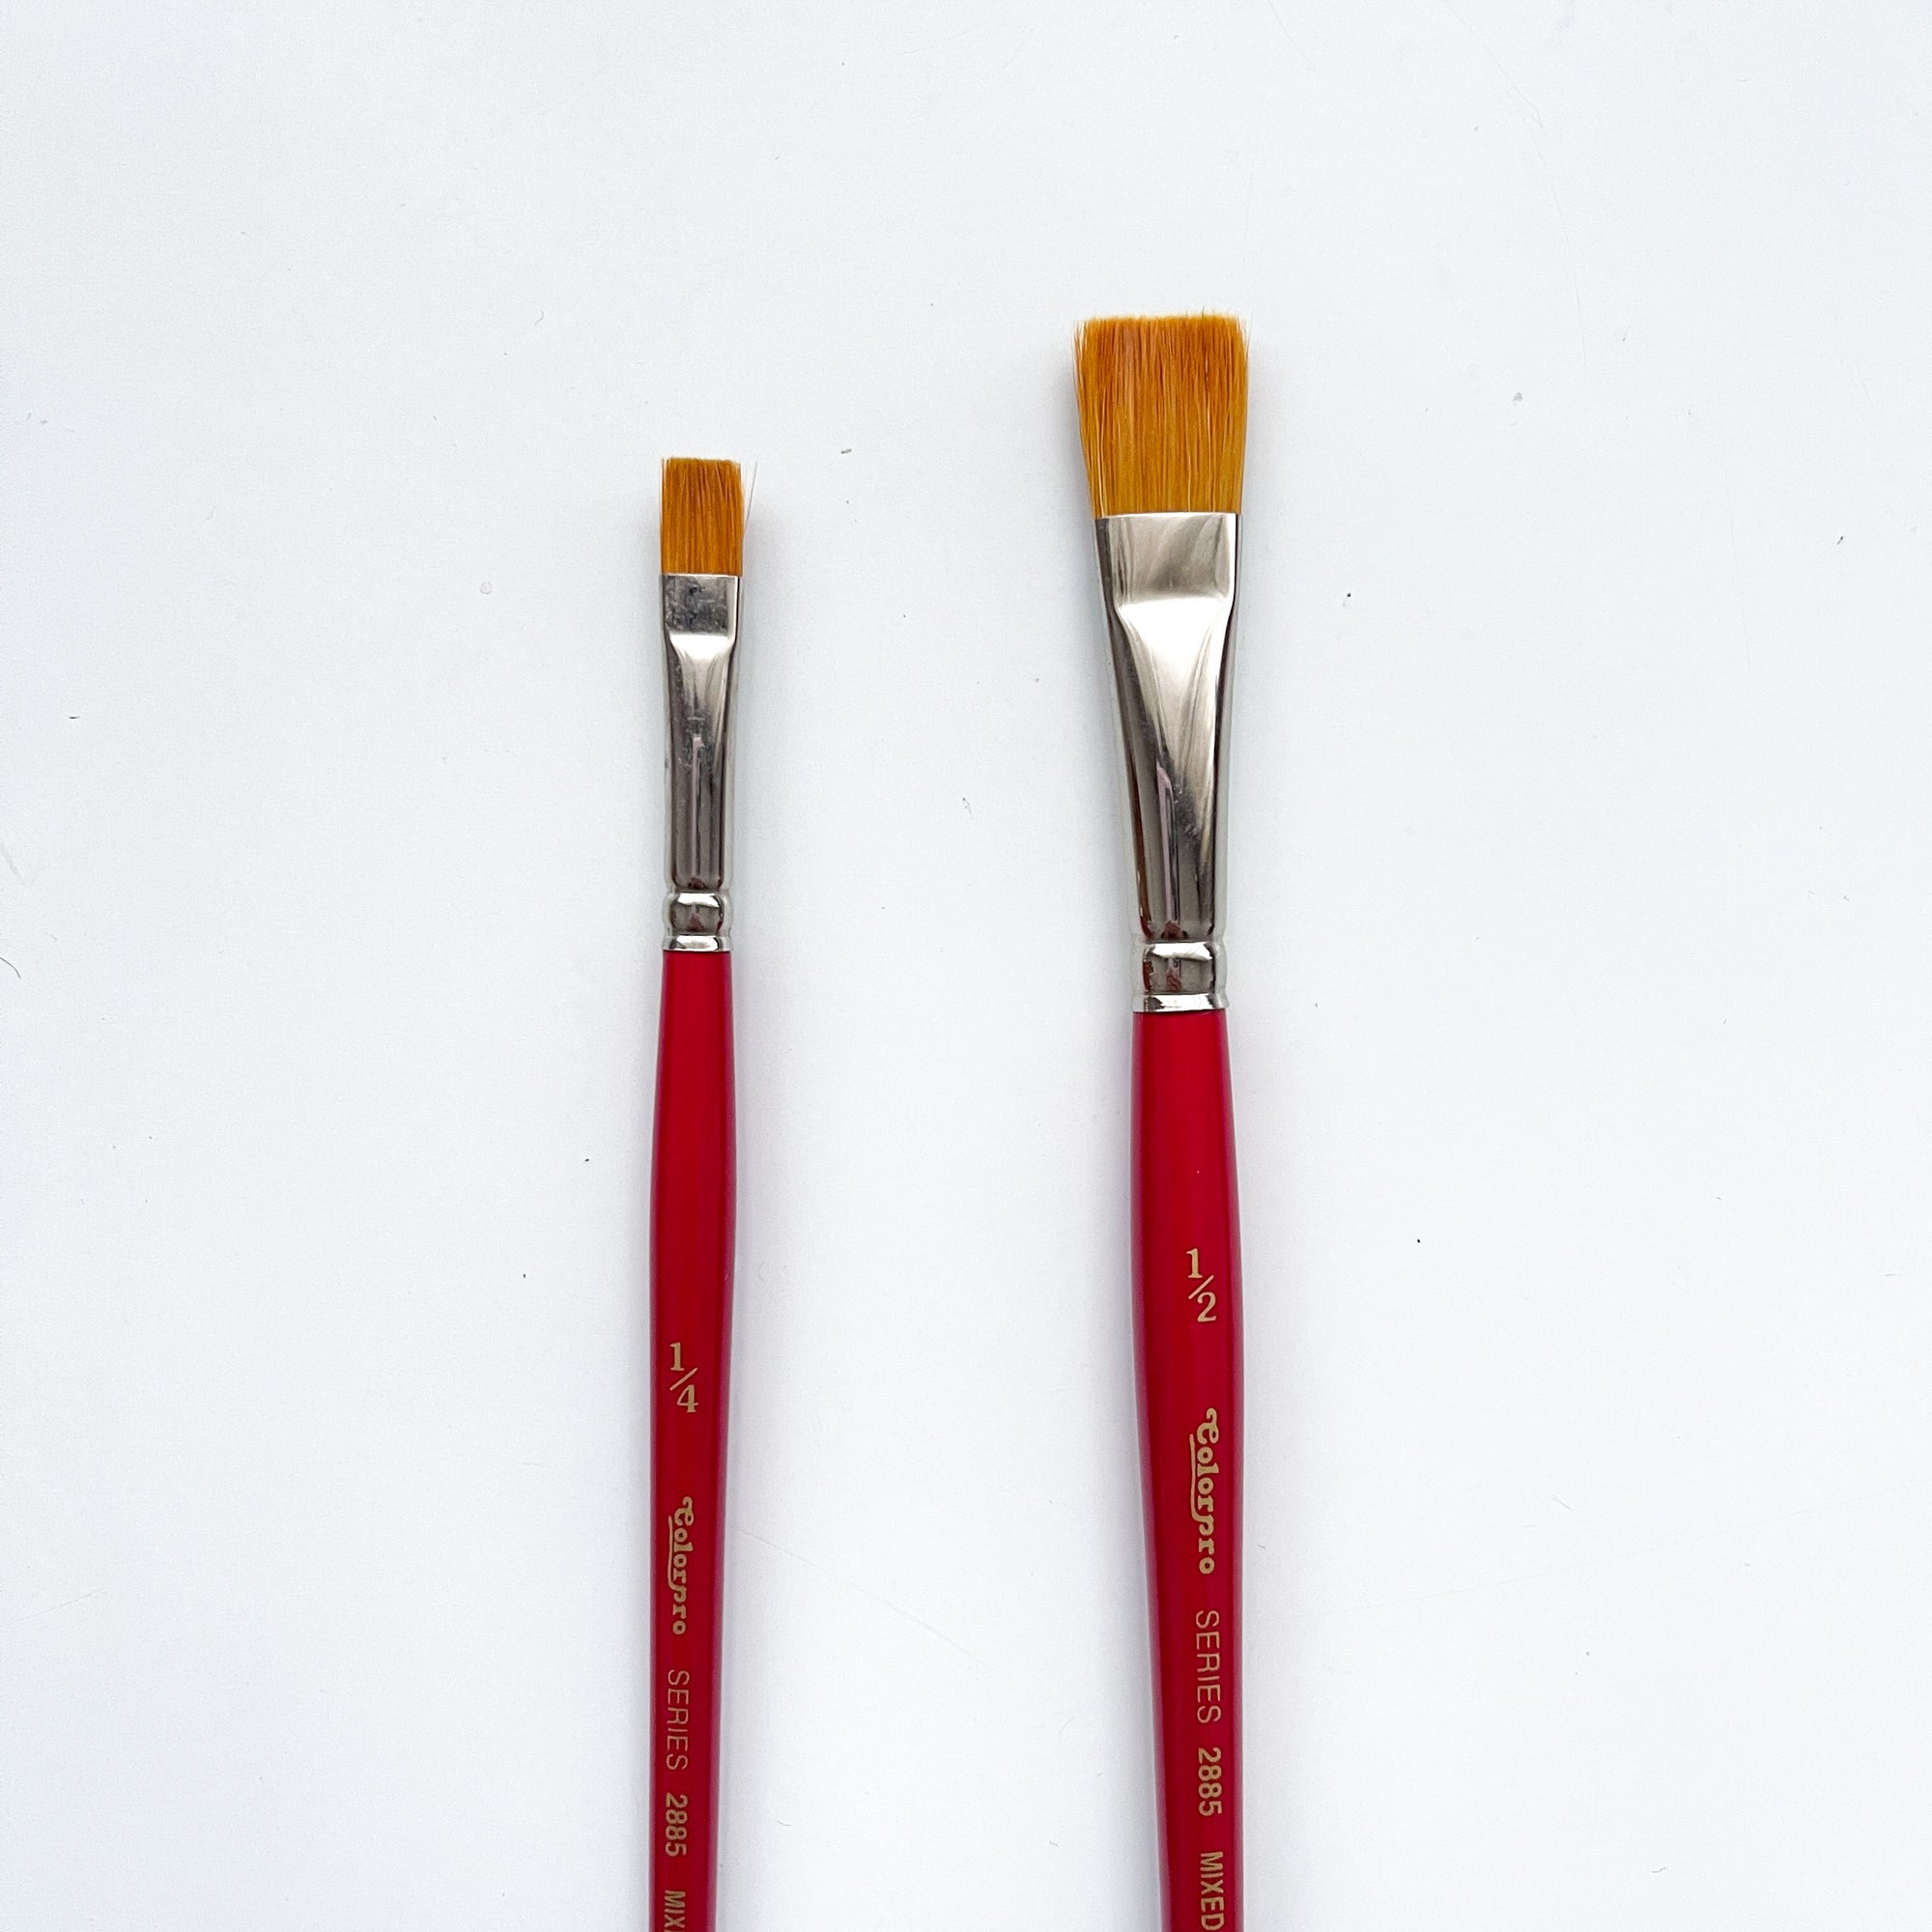 Colorpro Flat Brushes - Size 1/4 , 1/2